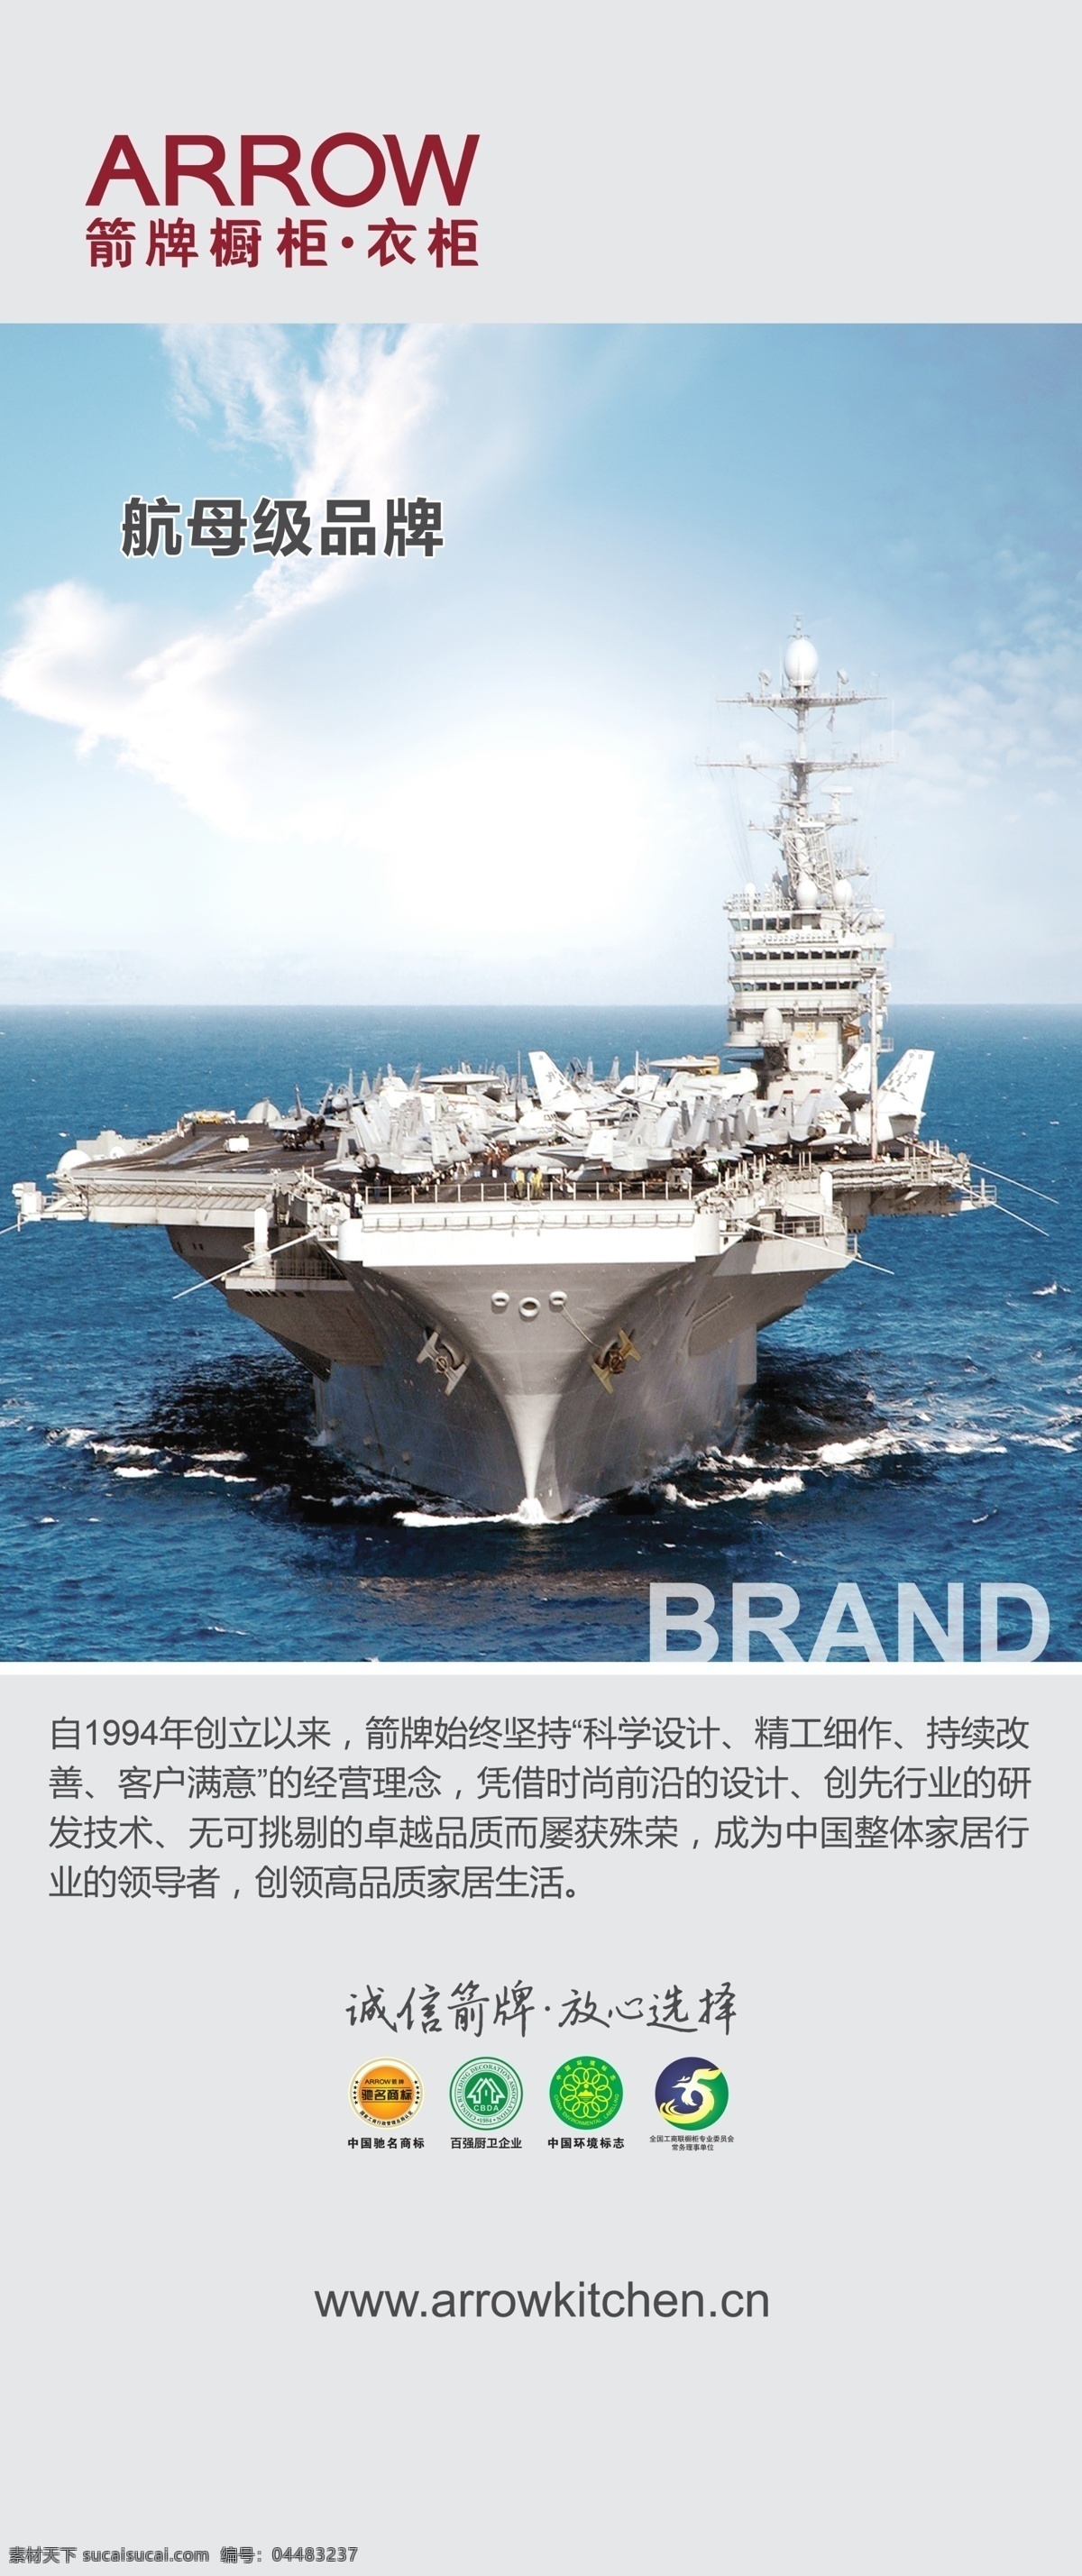 箭牌橱柜 衣柜 航母 蓝天 大海 简约 中国驰名商标 广告设计模板 源文件